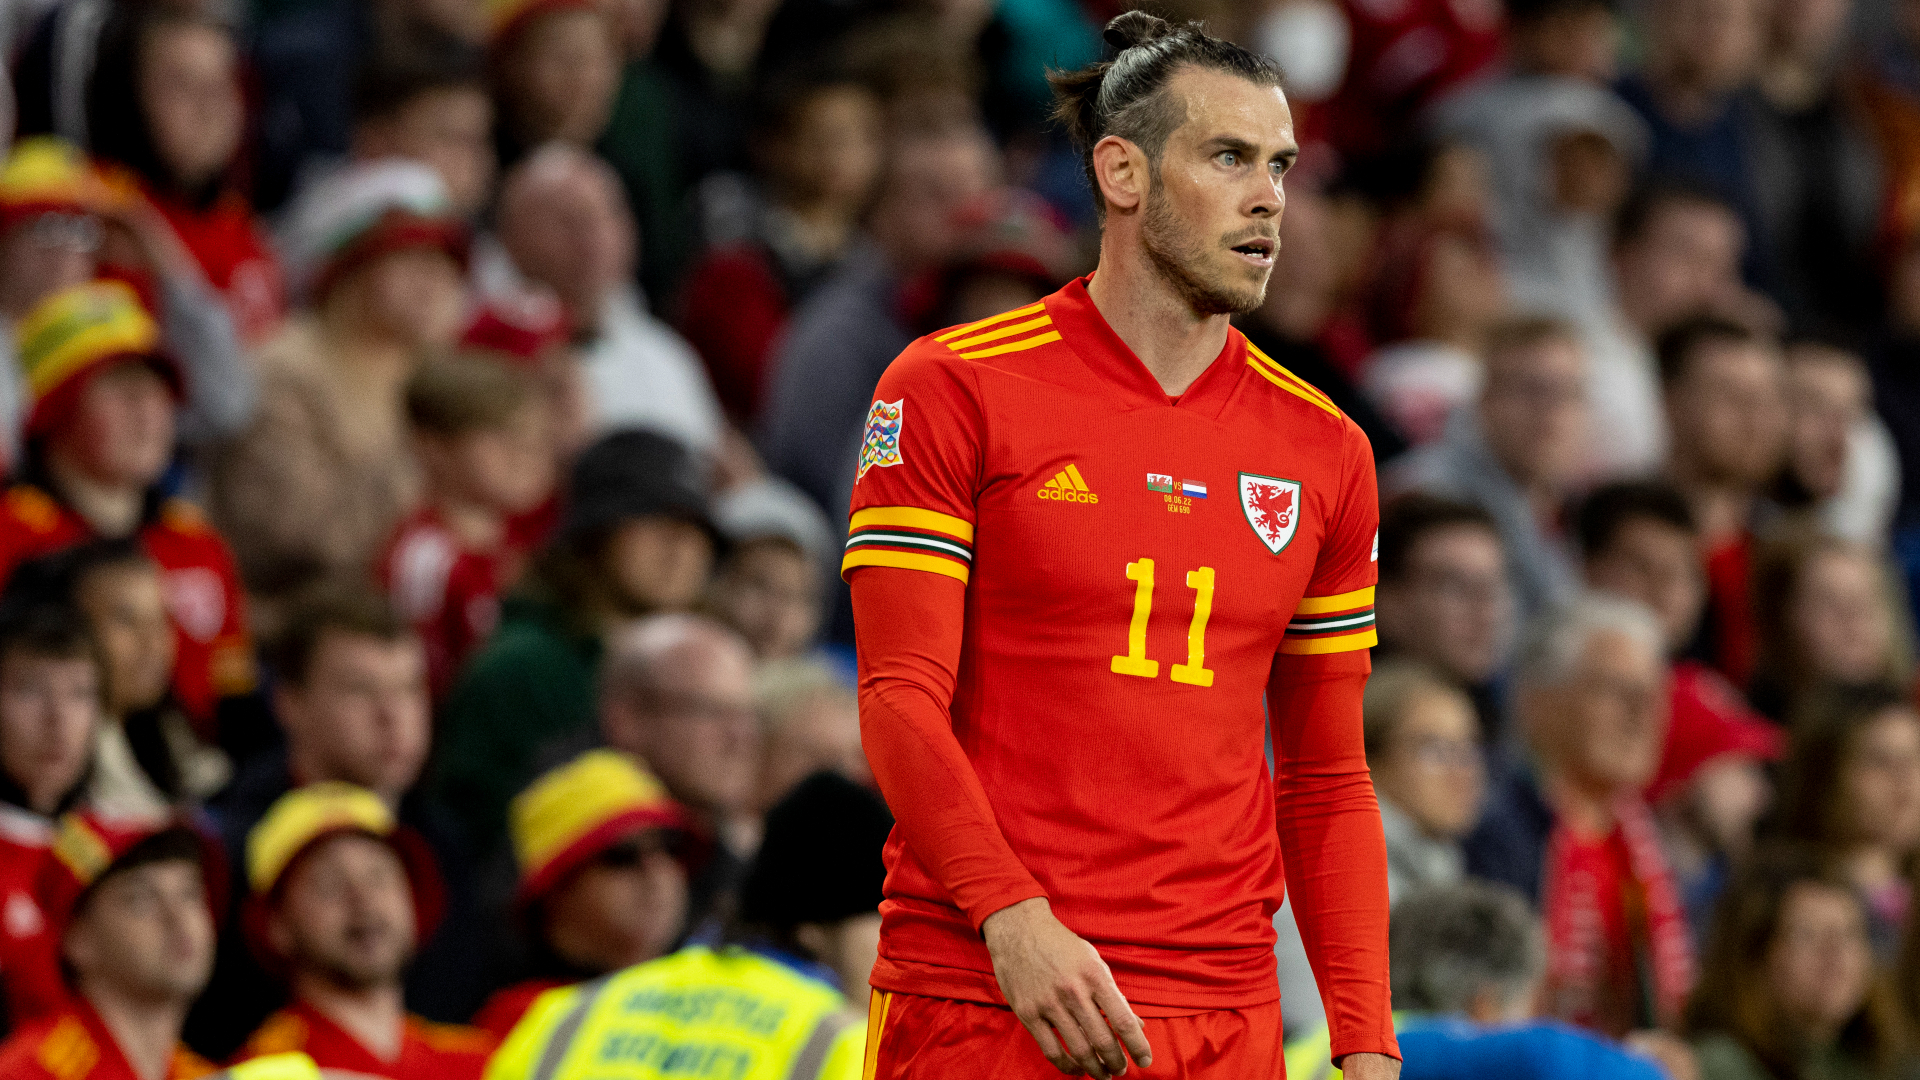 Bale: "El objetivo es fortalecerme para ayudar a LAFC y a Gales en el Mundial"